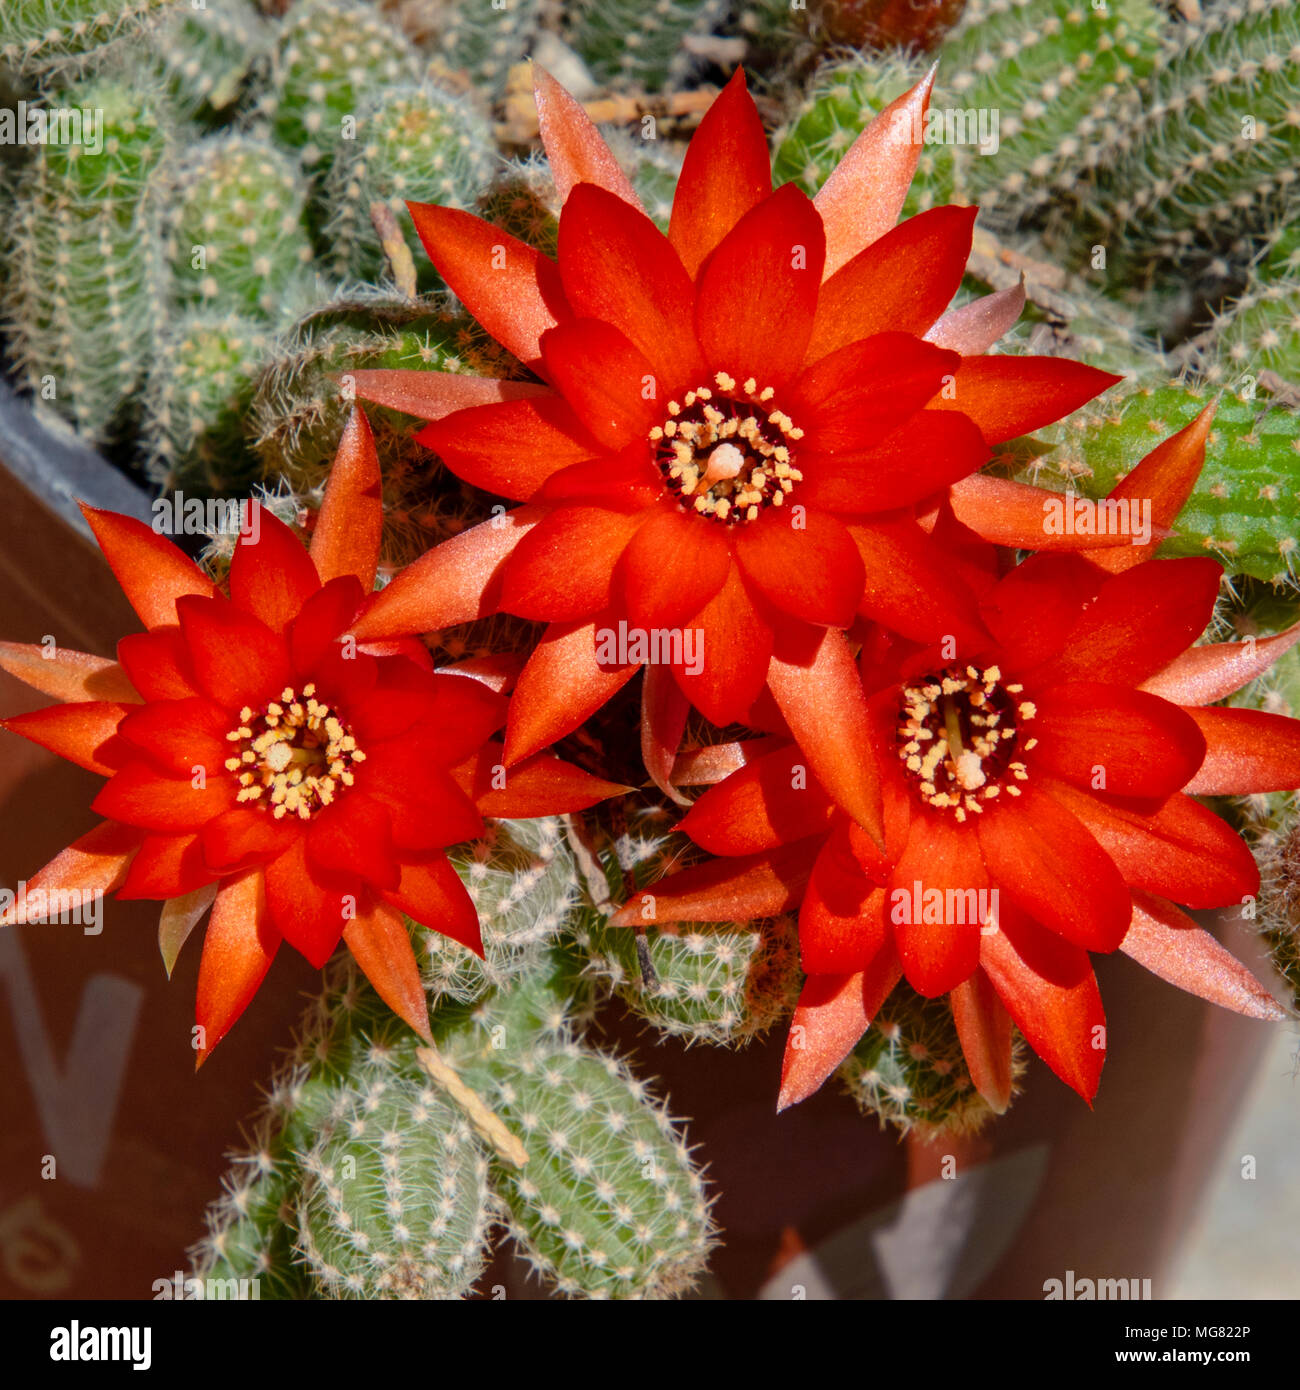 cluster of brilliant red peanut cactus flowers Stock Photo